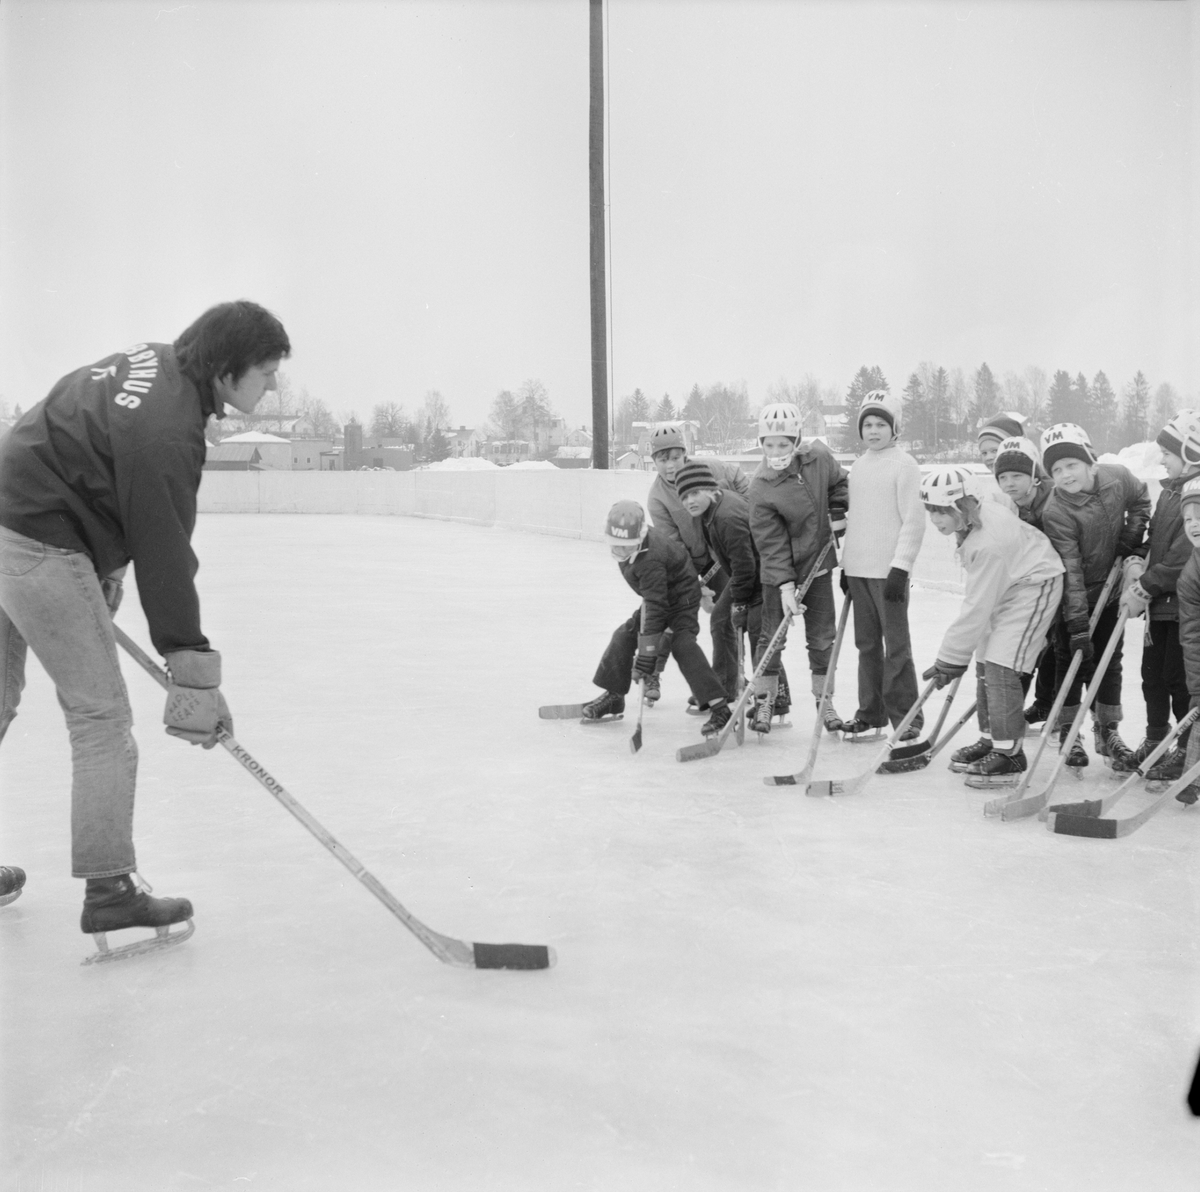 Populärt med hockey på lov, Tierp, Uppland, februari 1972